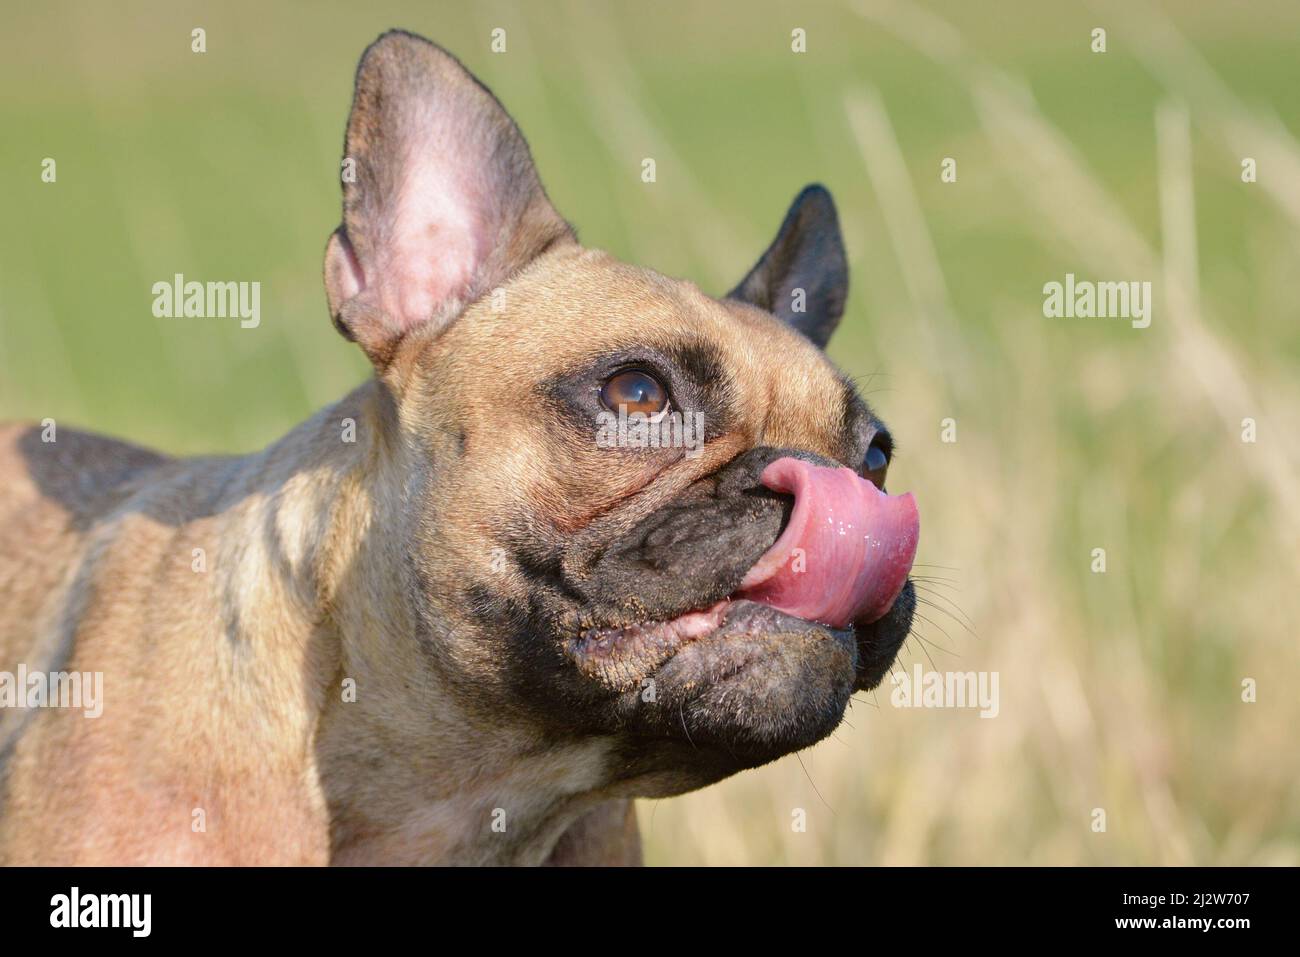 Cane che lecca il suo naso, un segno di ansia o nervosismo Foto Stock